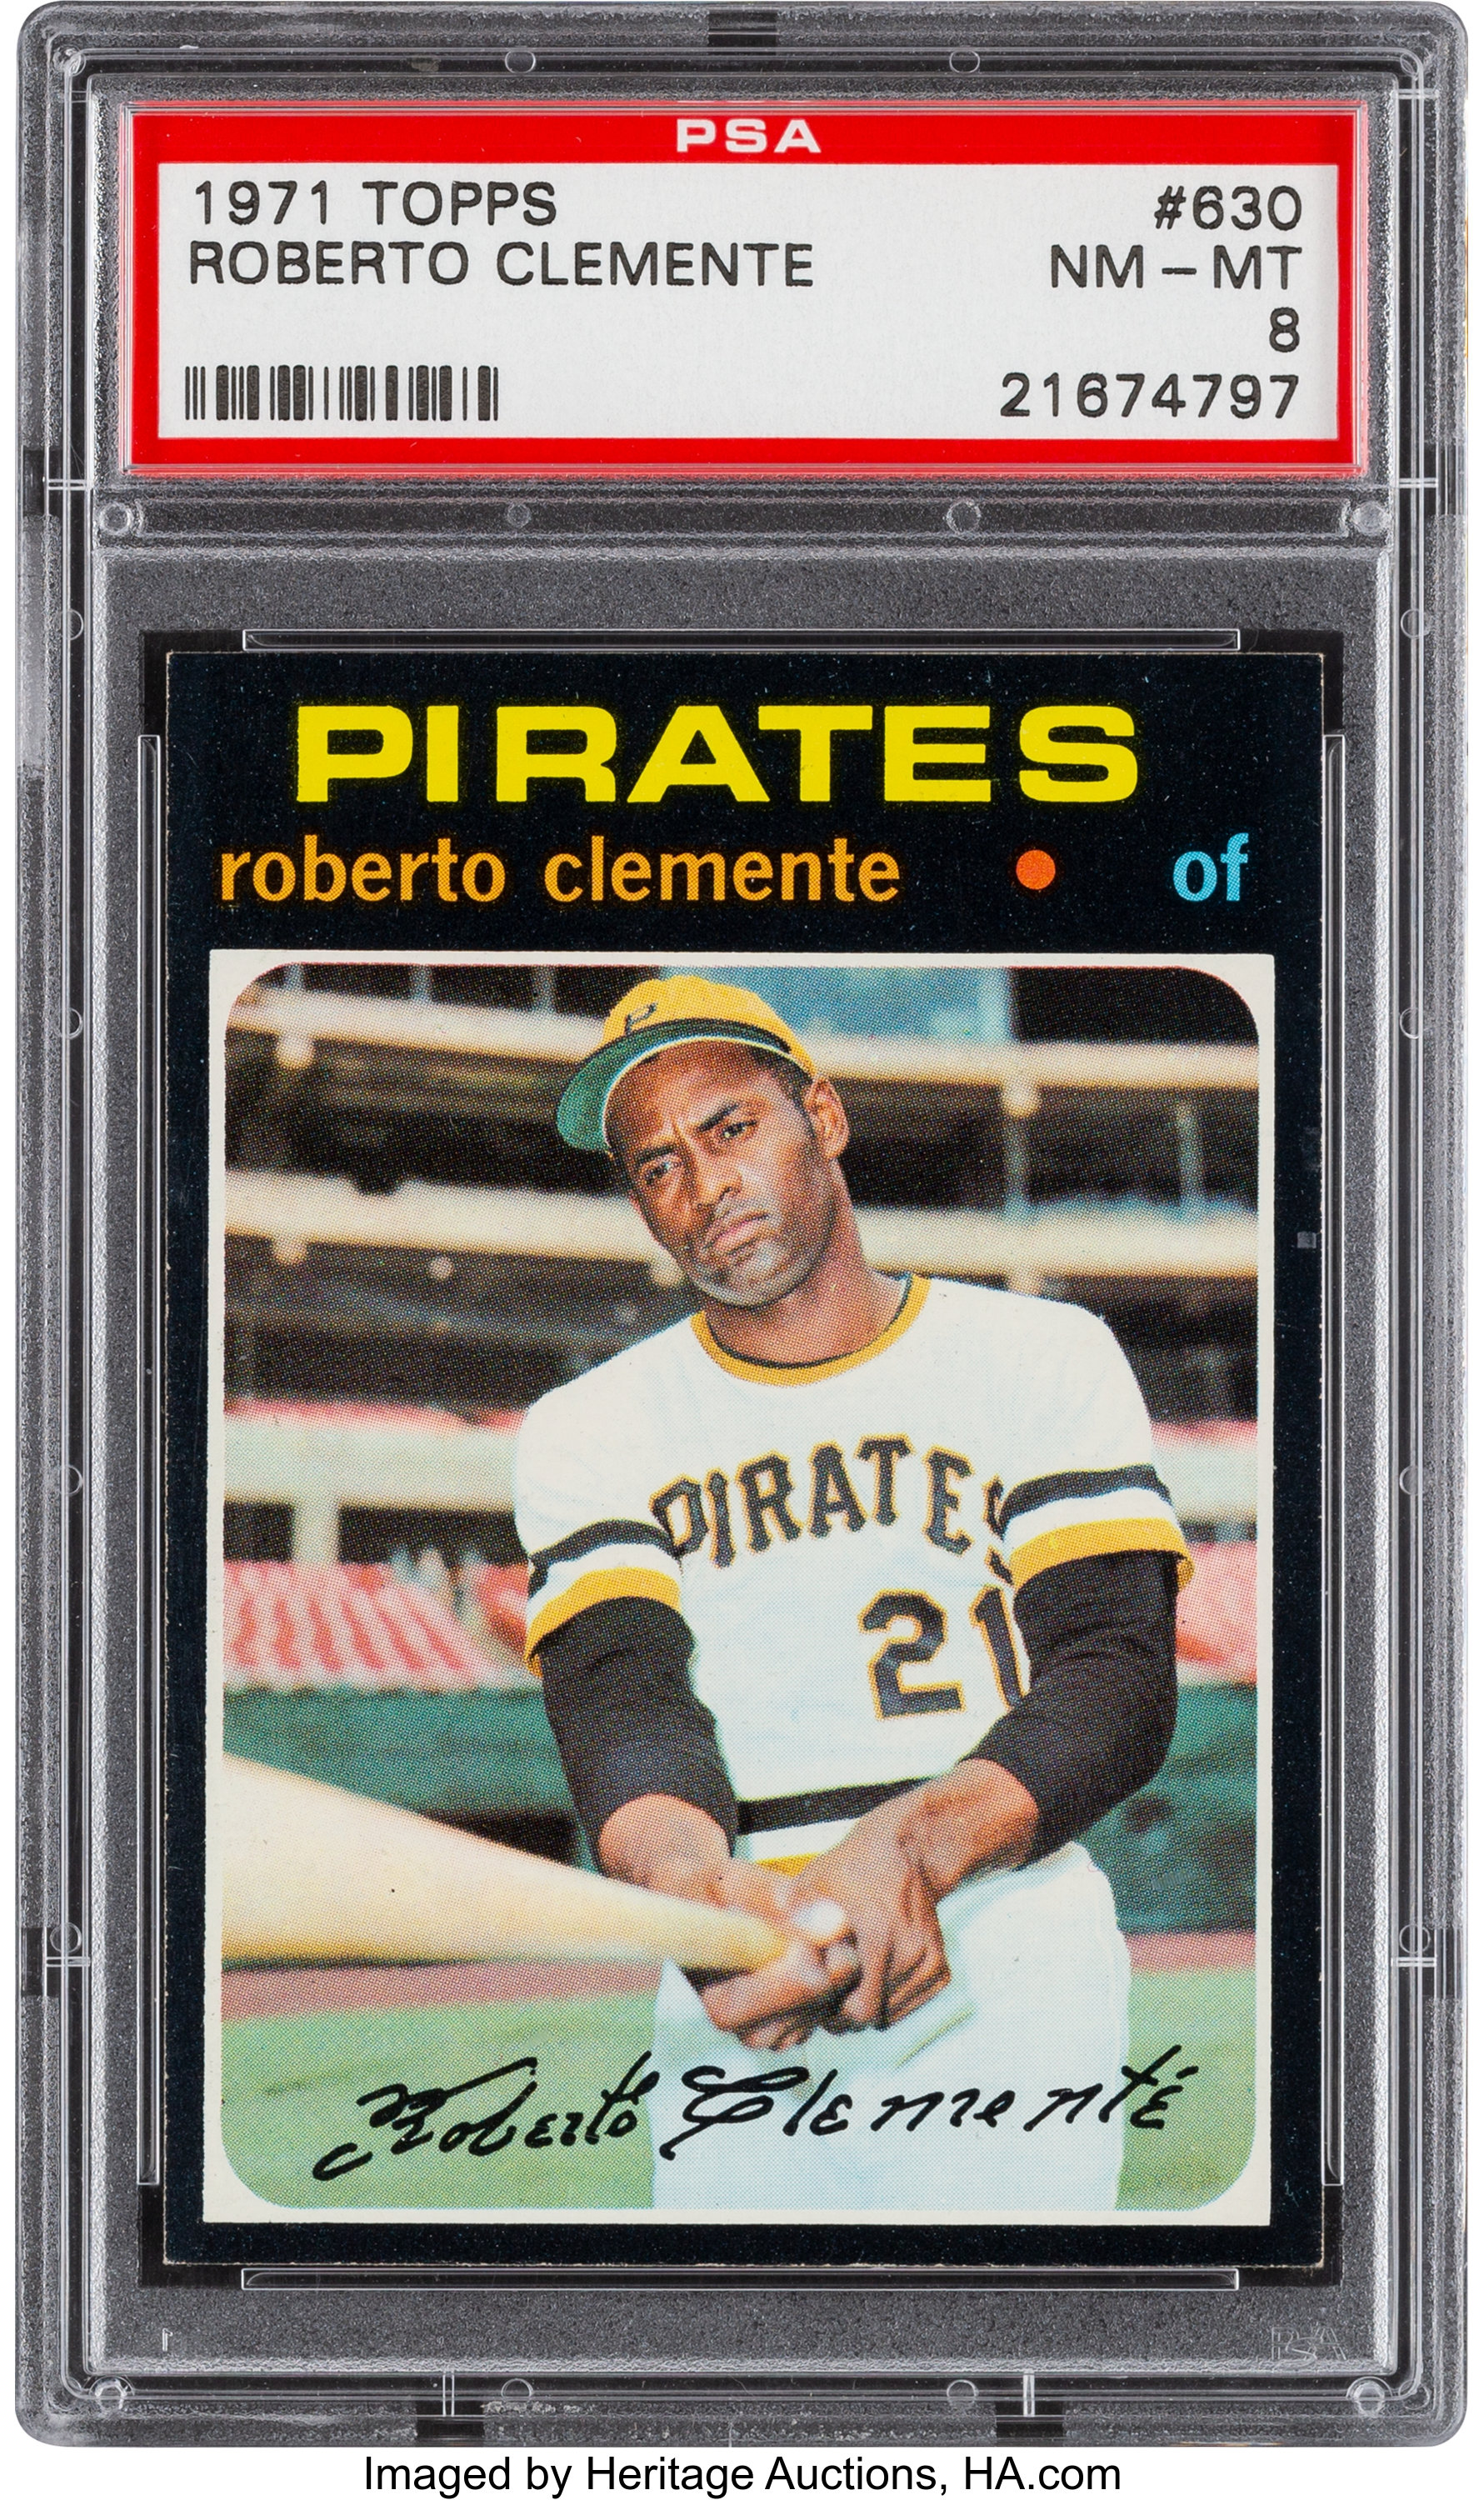 Roberto Clemente 1971 Topps Baseball Card #630 PSA Graded NM-MT 8